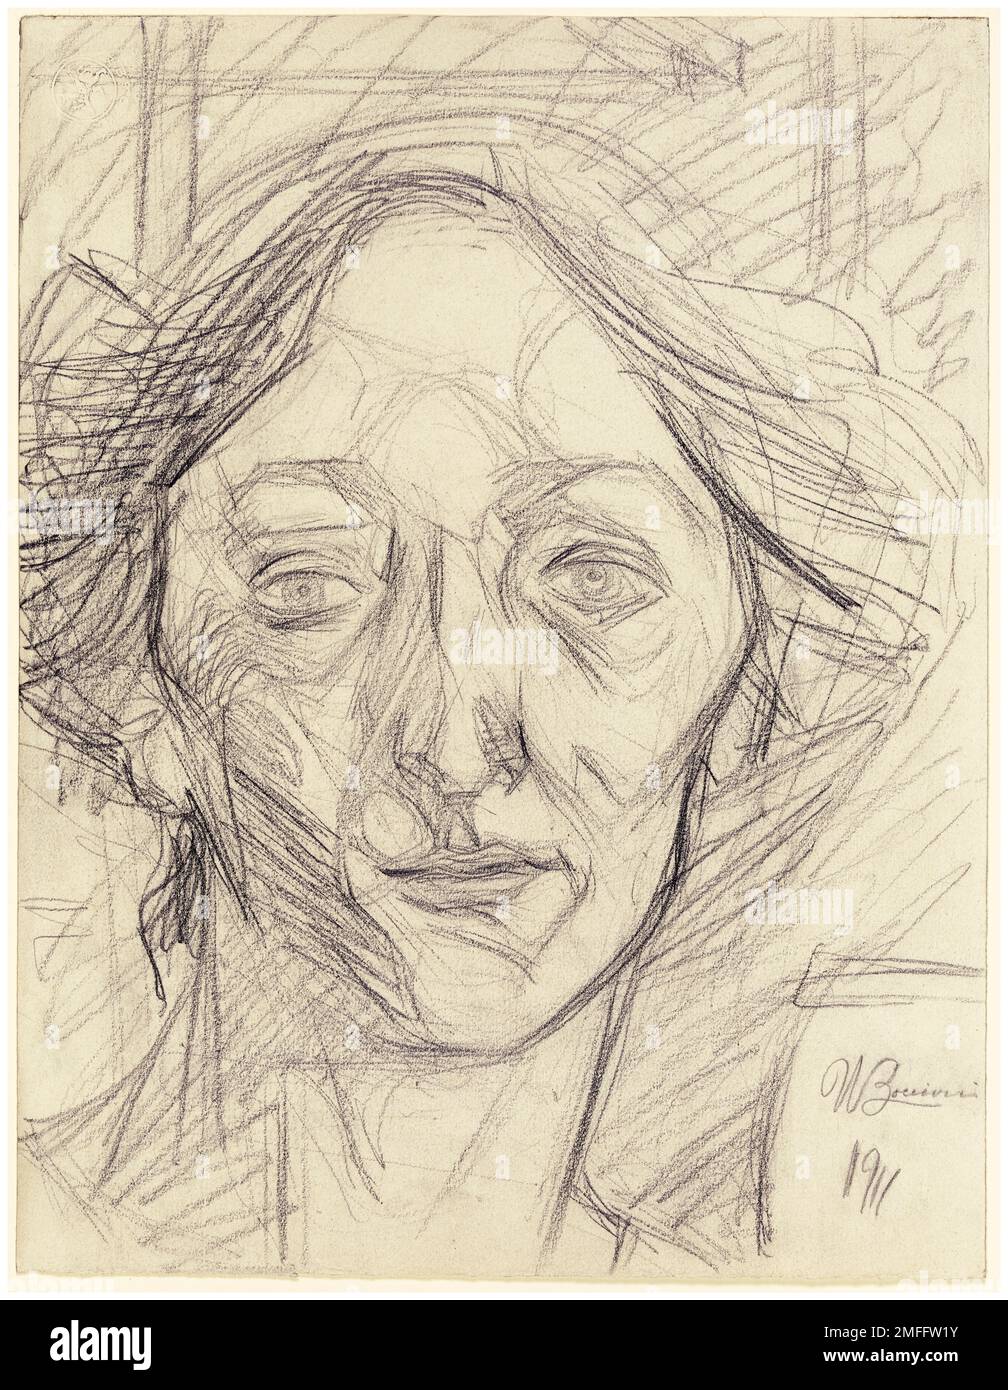 Umberto Boccioni, Woman's Head, portrait drawing in pencil, 1911 Stock Photo